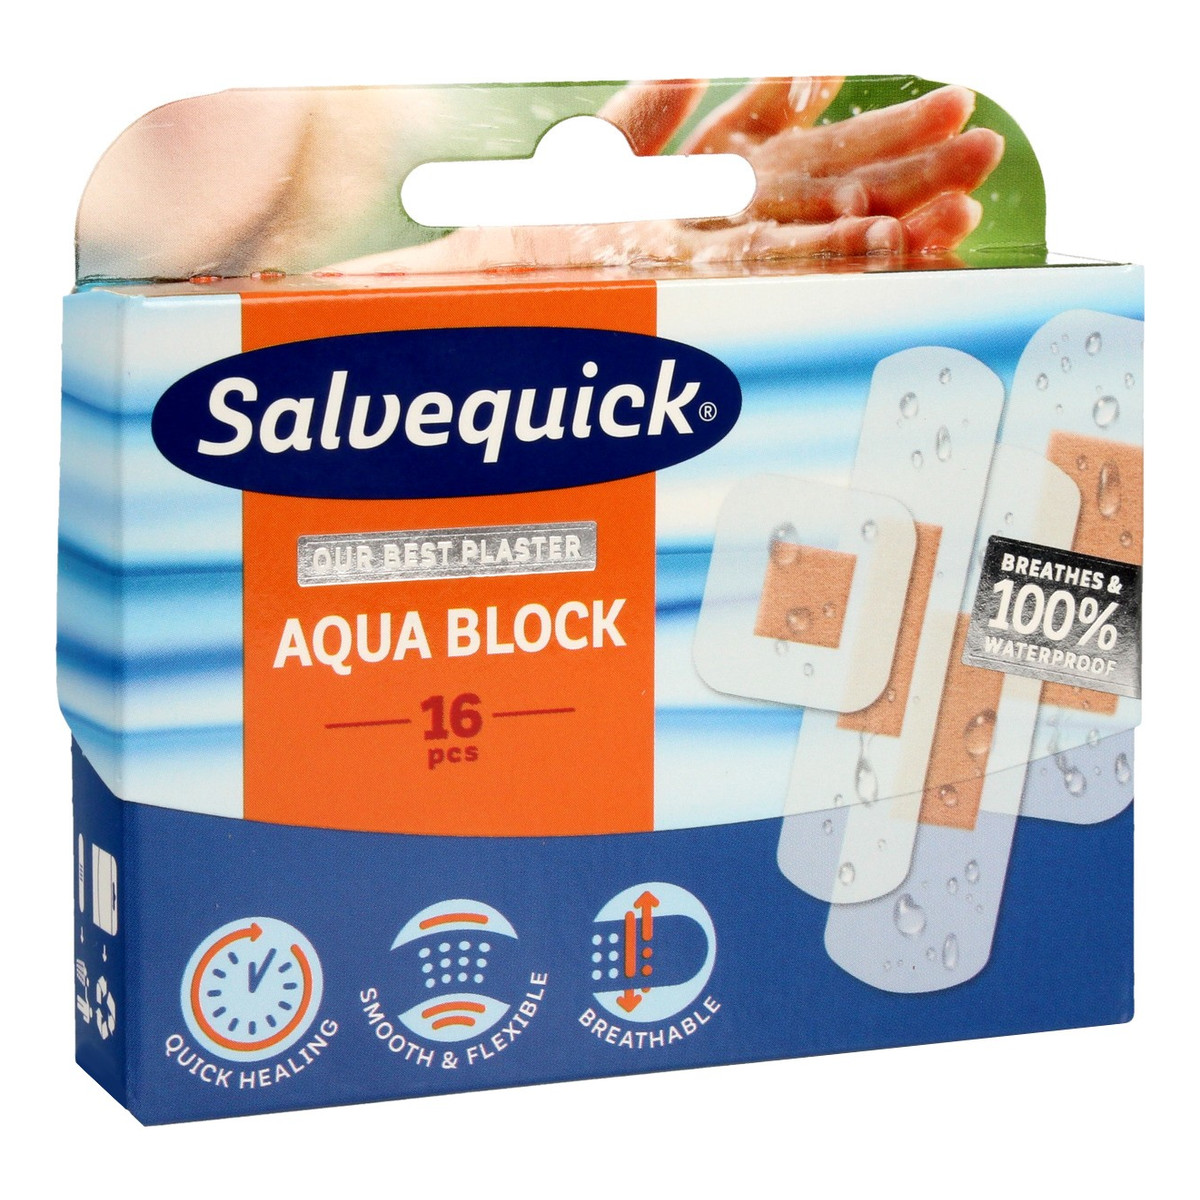 Salvequick Aqua Block plastry opatrunkowe 1op. (16 szt.)